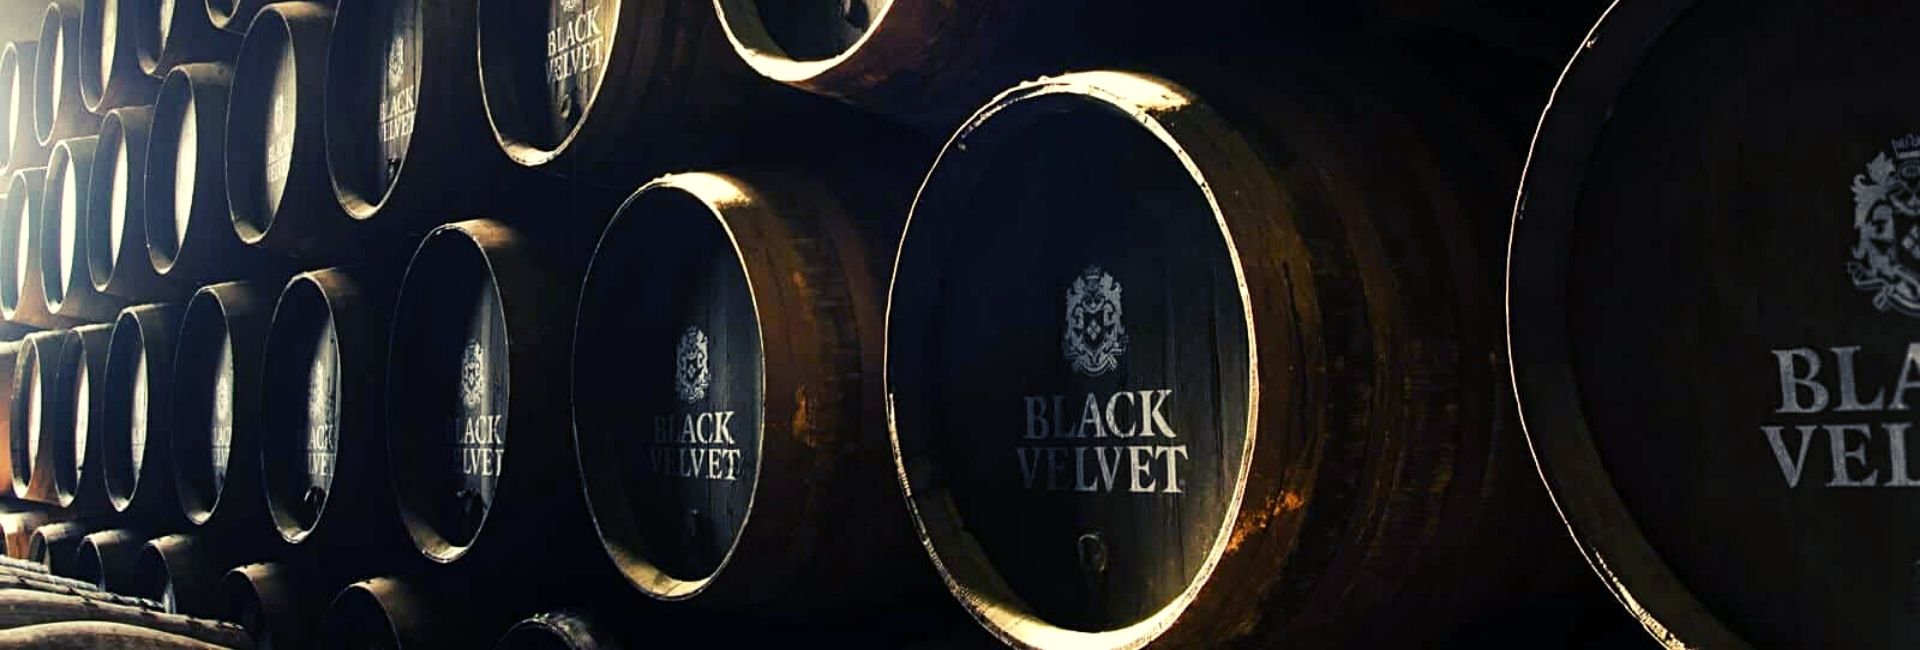 Black Velvet Canadian Whisky review